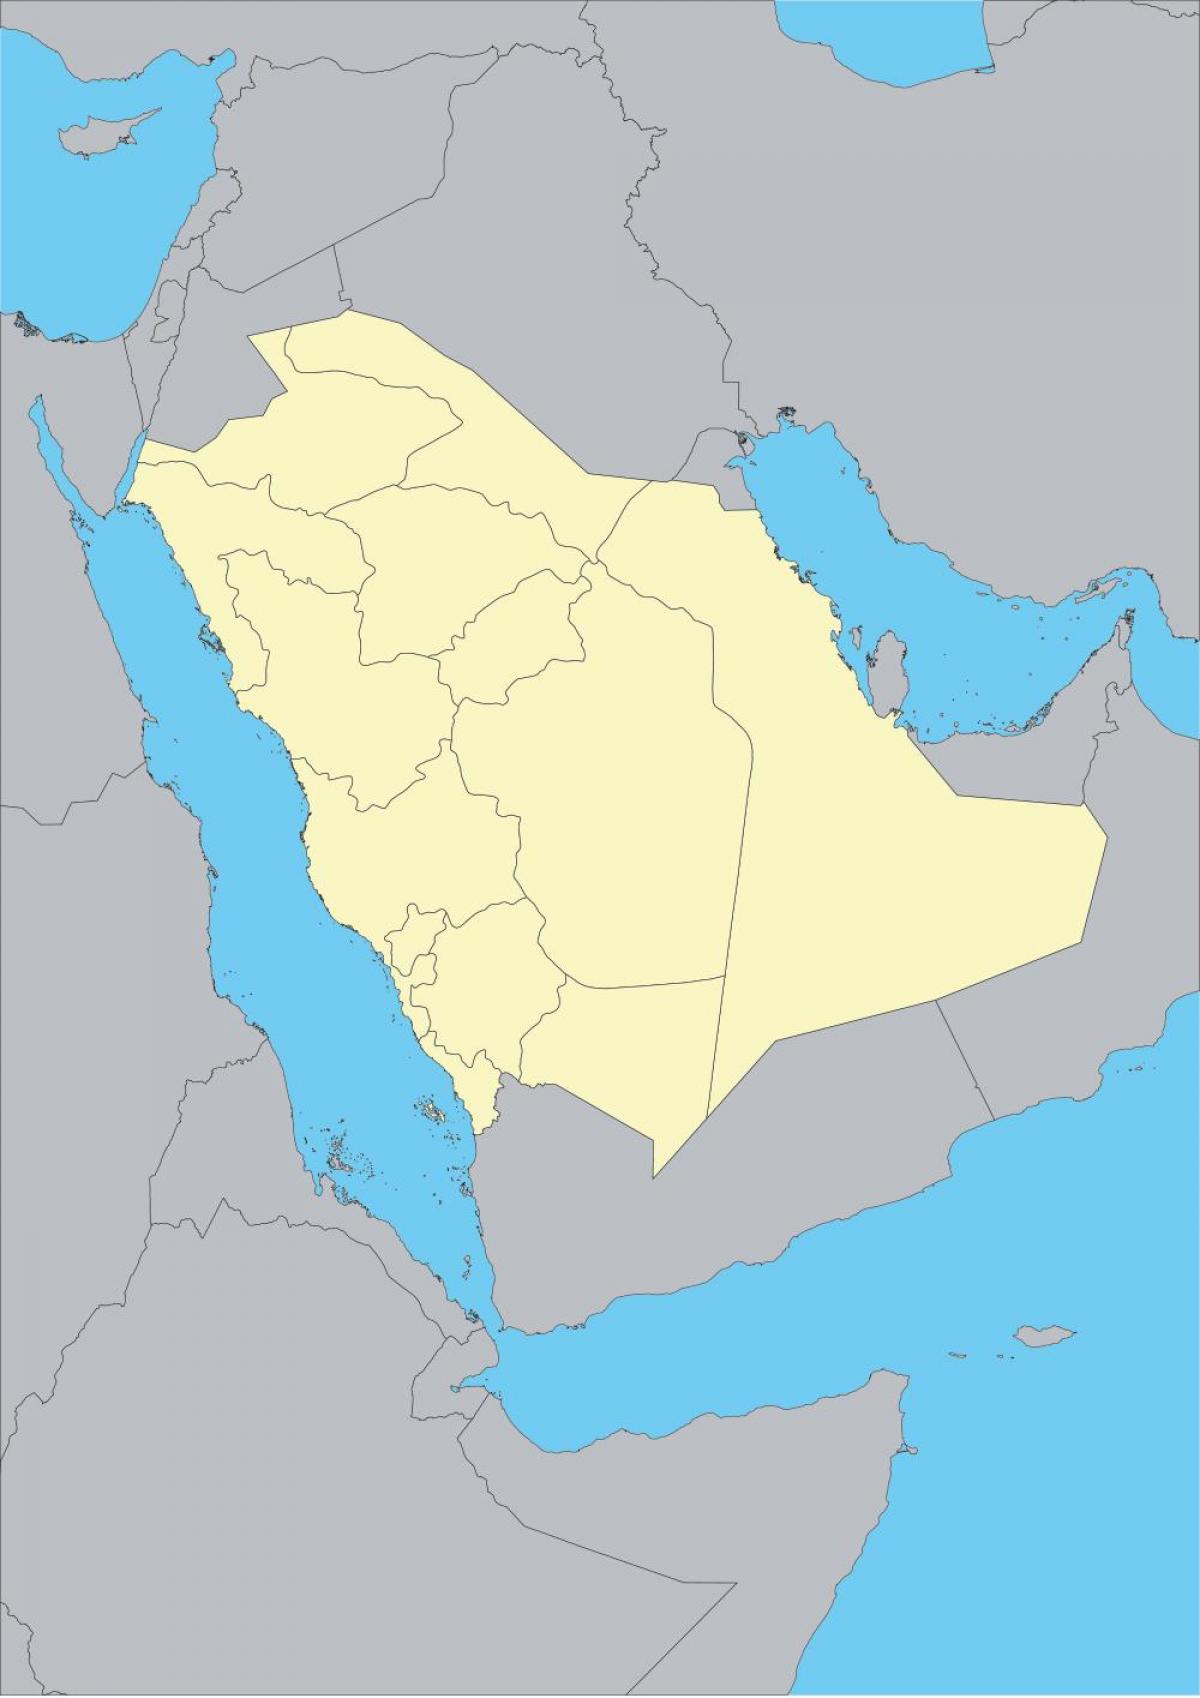 نقشه عربستان سعودی طرح